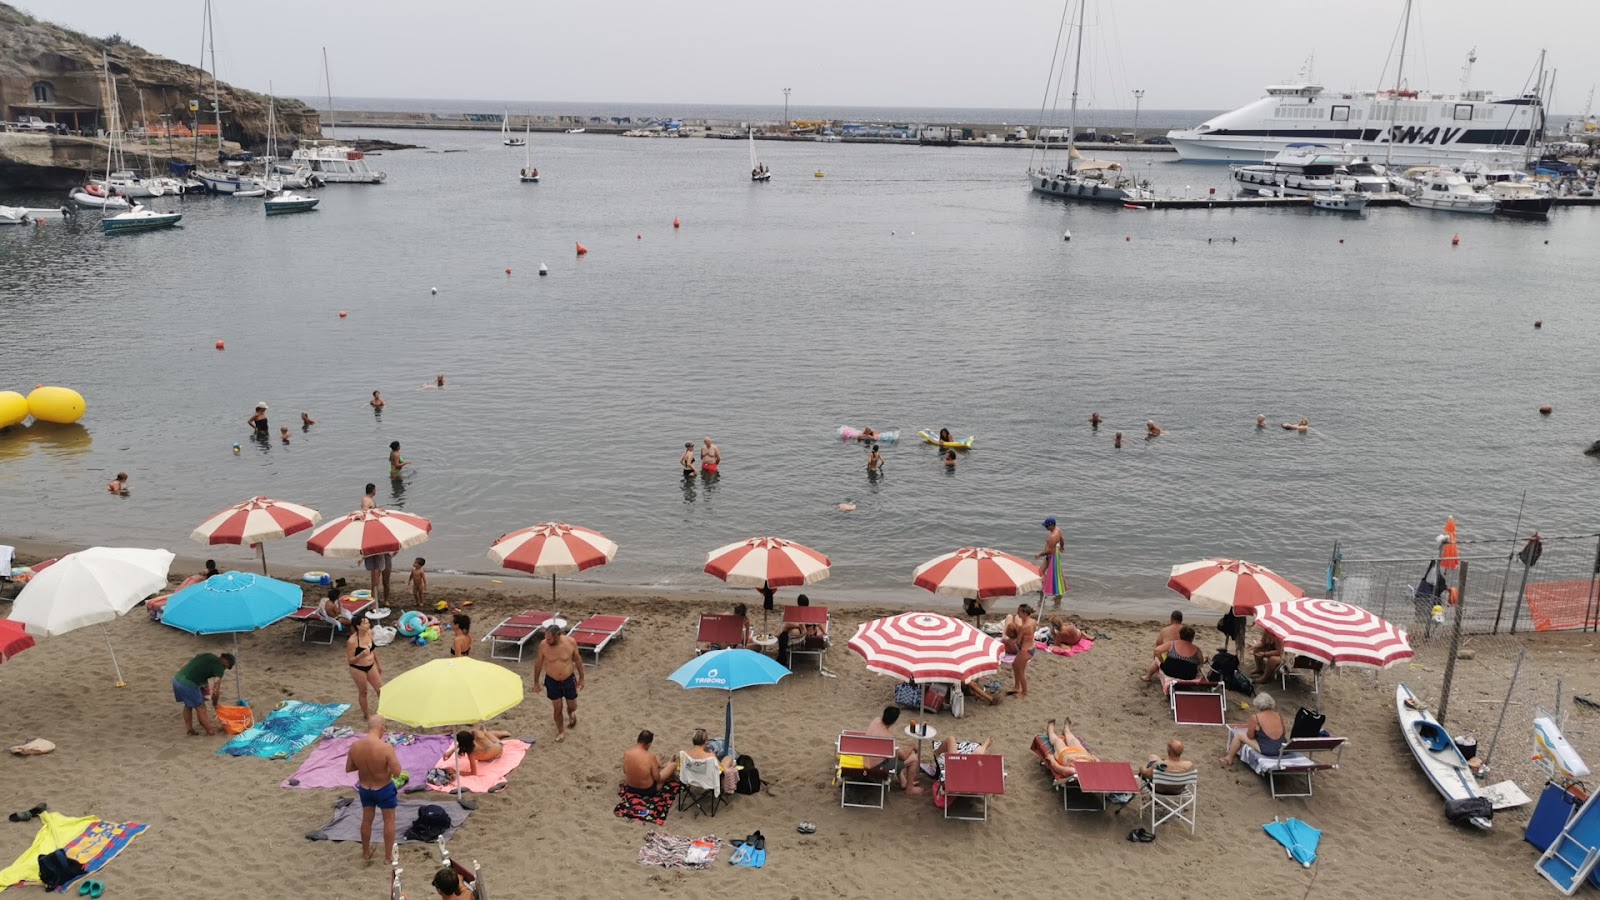 Foto av Spiaggia di Cala Rossano med hög nivå av renlighet